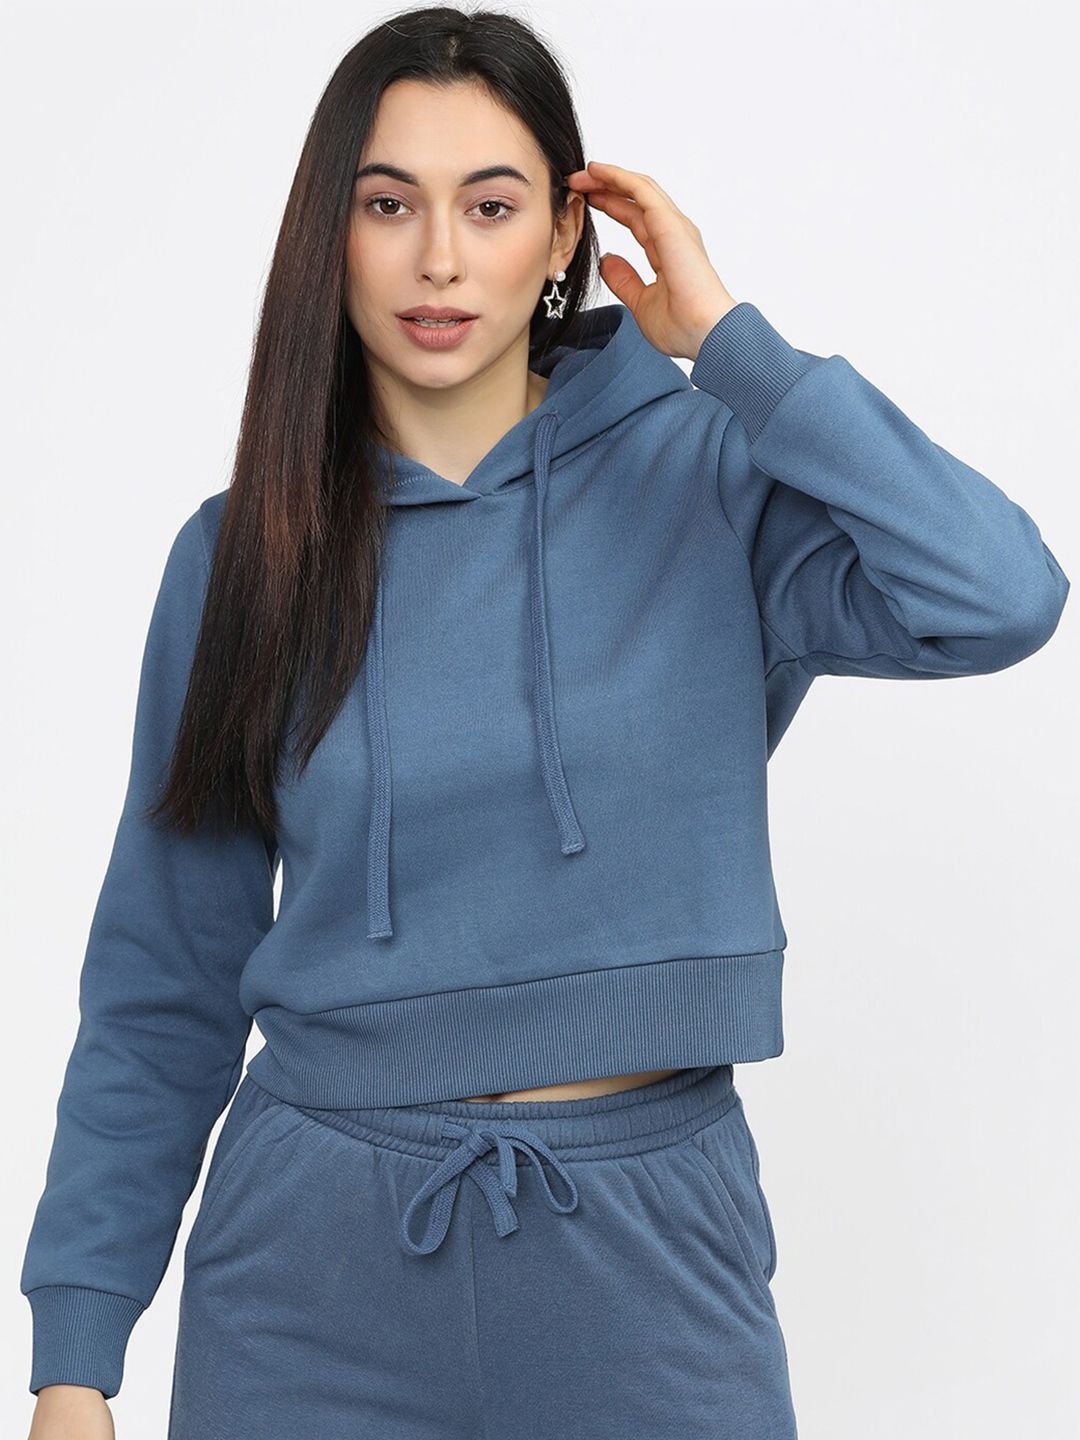 Tokyo Talkies Women Blue Hooded Sweatshirt Price in India